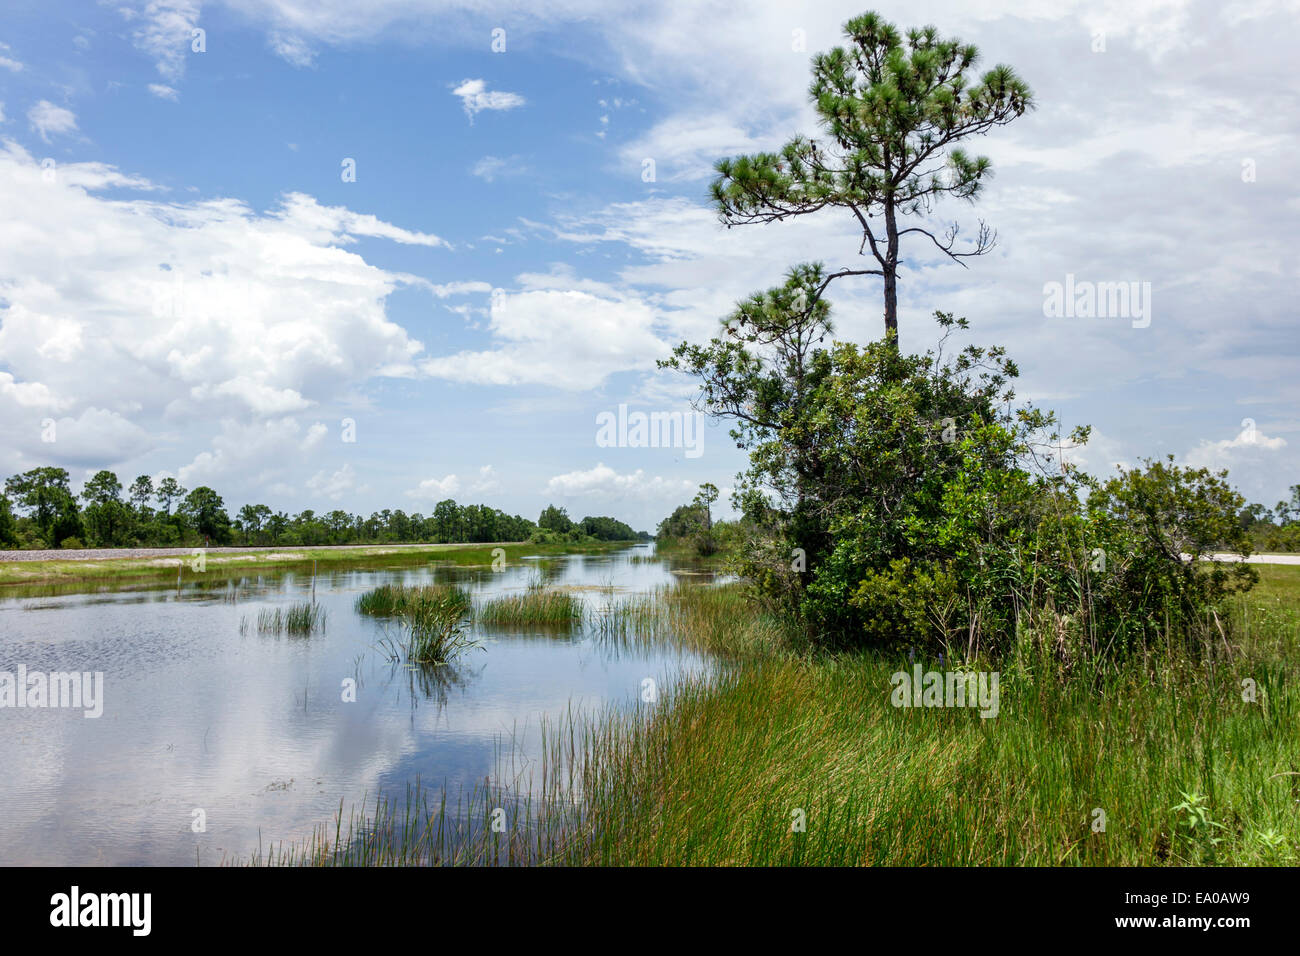 Floride Jupiter,Loxahatchee Slough zone naturelle,eau,prairie humide,pin,nature,paysage,FL140803004 Banque D'Images